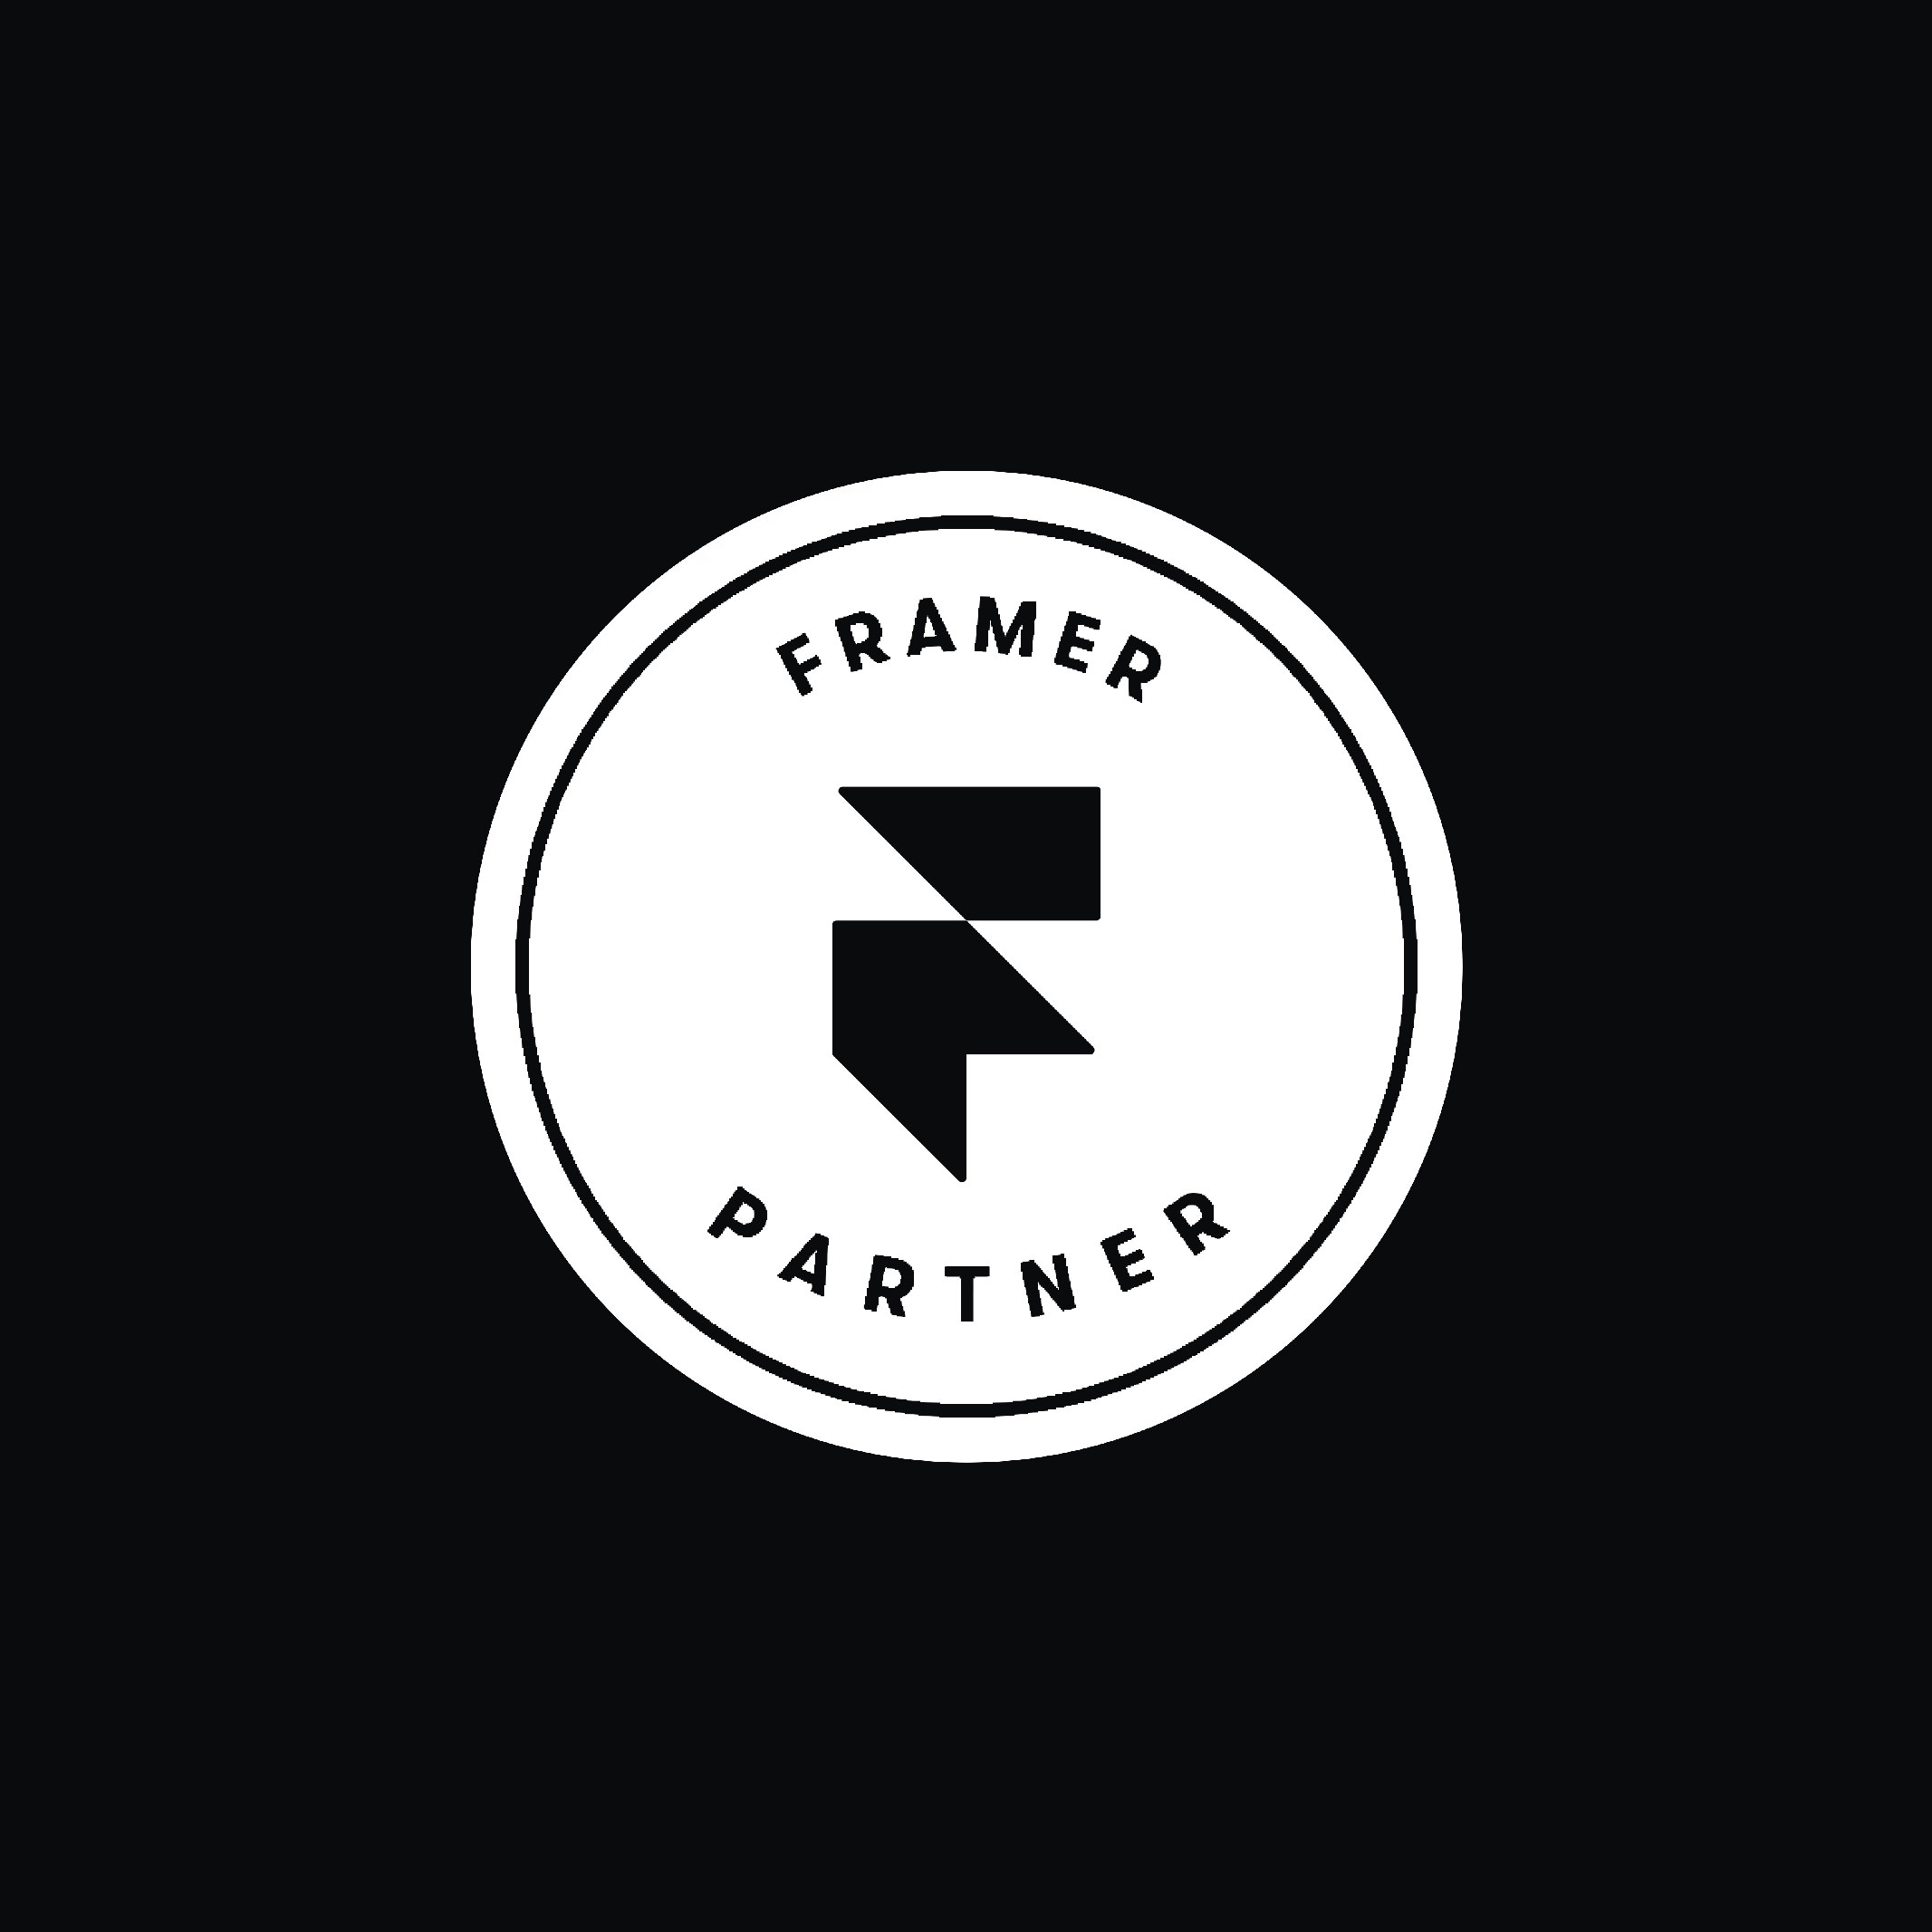 Framer Partner | Reech